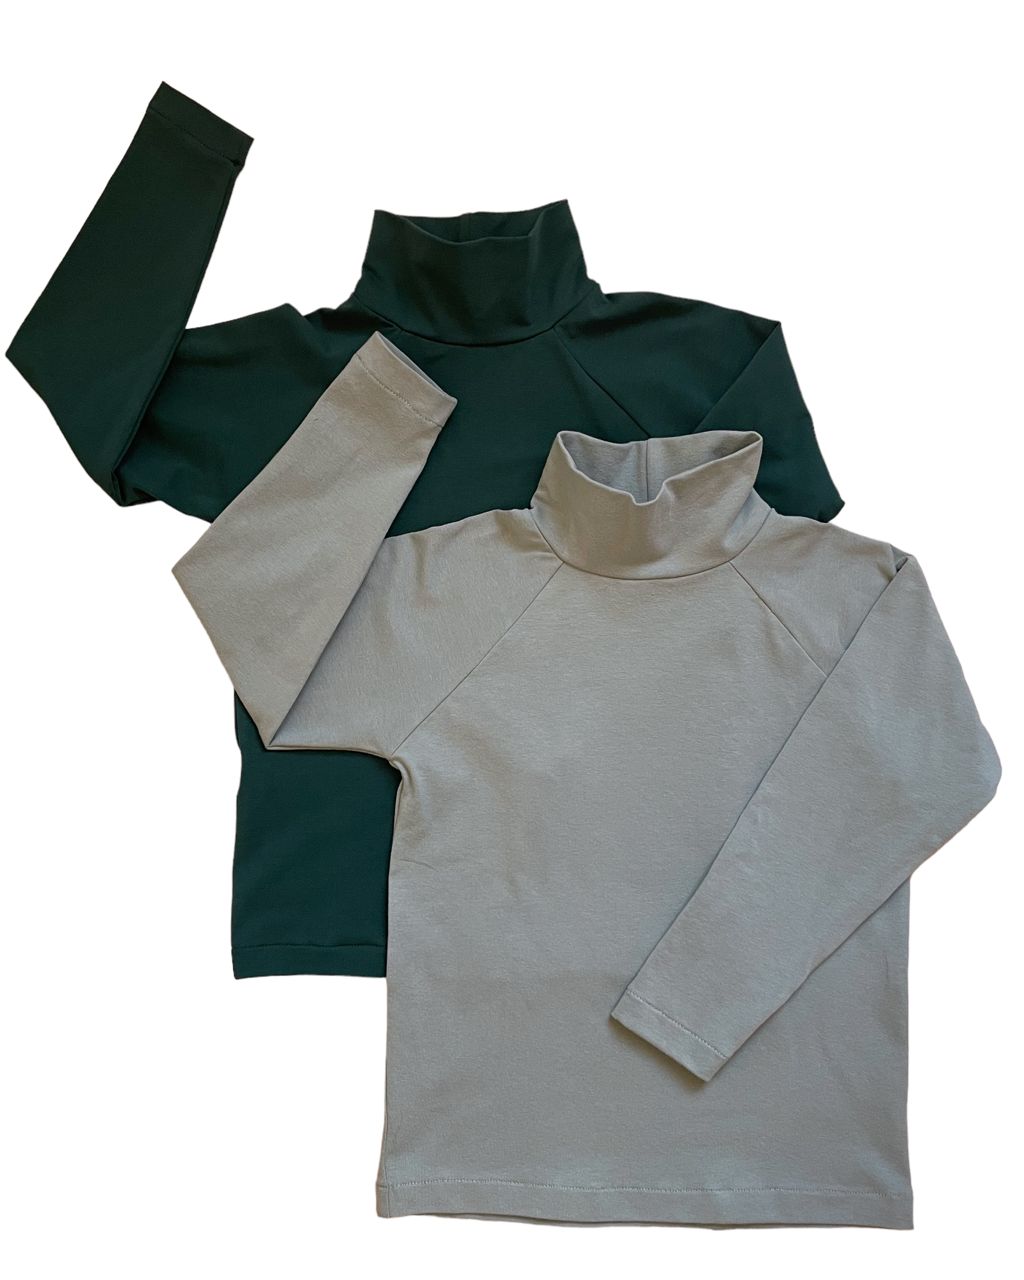 Komplet dwóch koszulek bawełnianych z golfem - butelkowa zieleń/zgaszona mięta